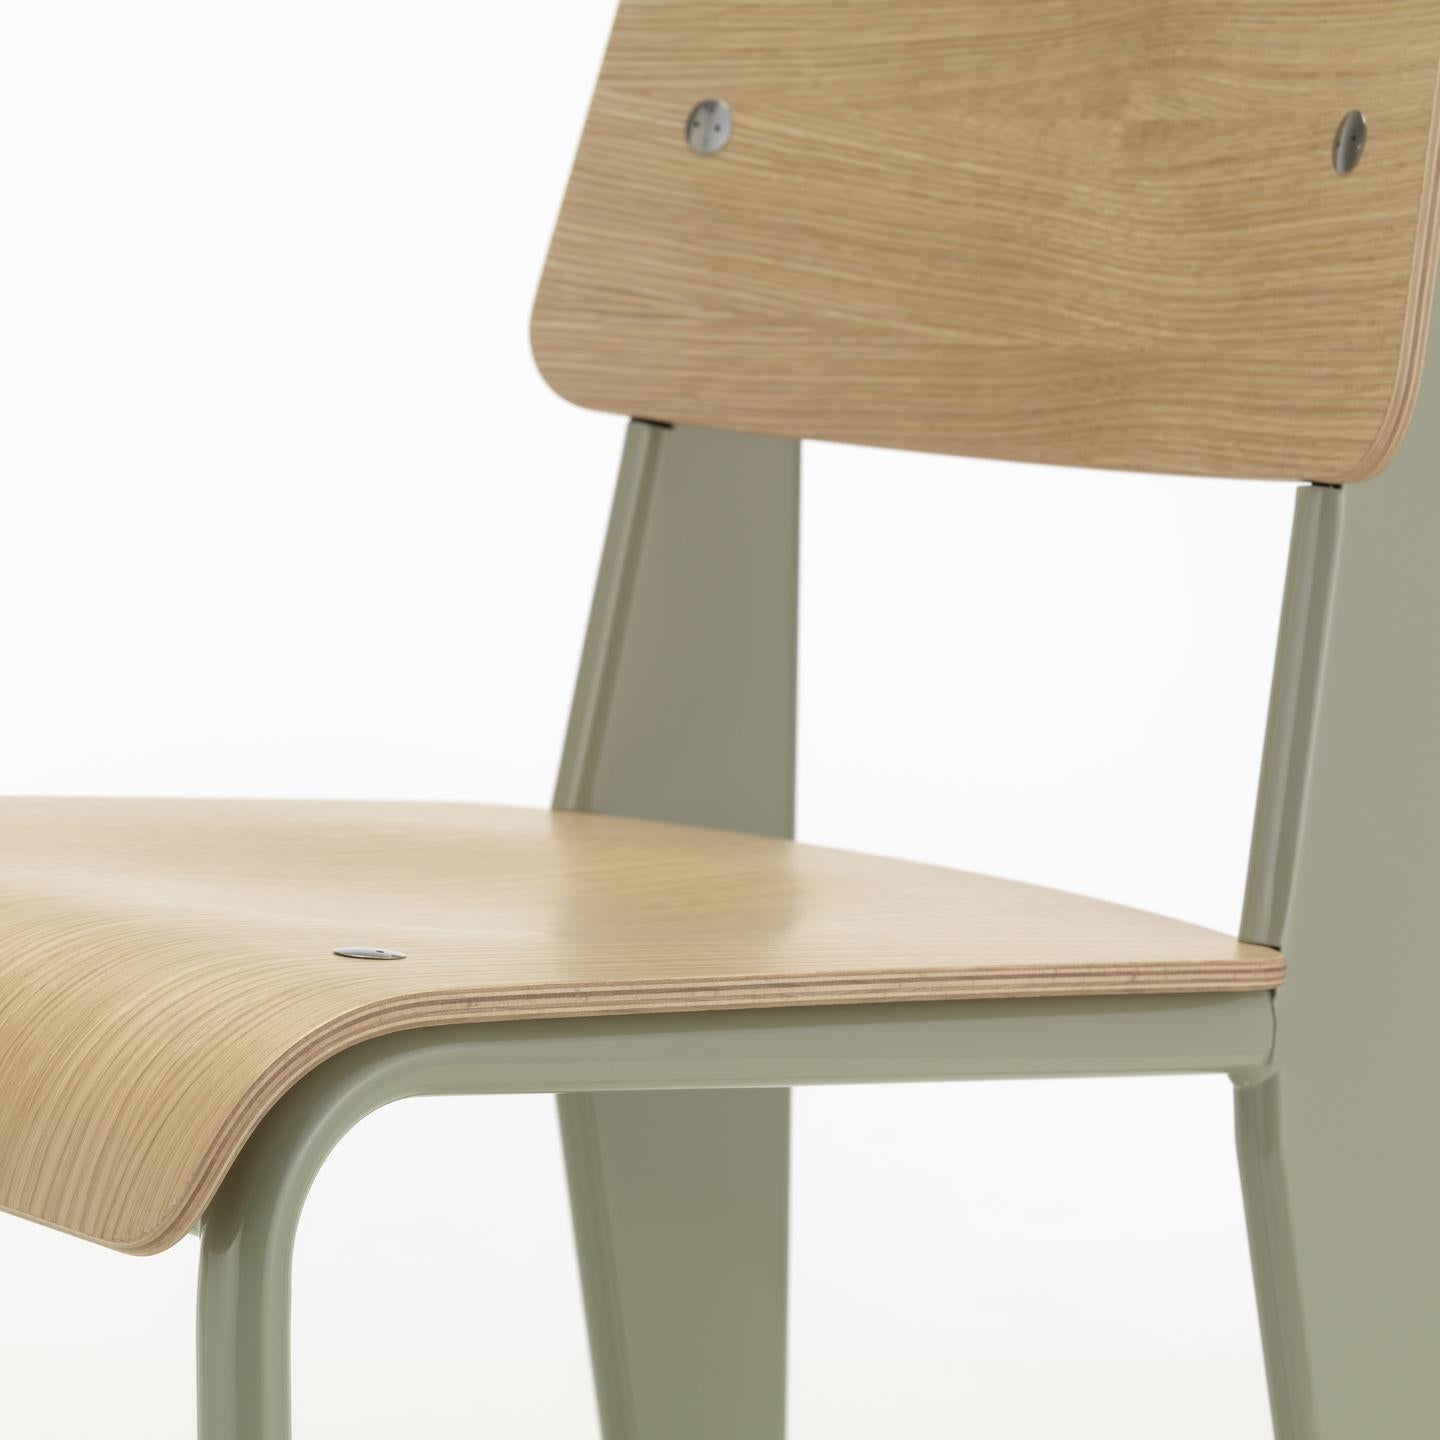 Jean Prouvé Standard Stuhl aus Eiche natur und grauem Metall für Vitra. Der Standard-Stuhl ist ein frühes Meisterwerk des französischen Designers und Ingenieurs Jean Prouvé. Ursprünglich 1934 entworfen, entwickelte sich der Standard zu einem der